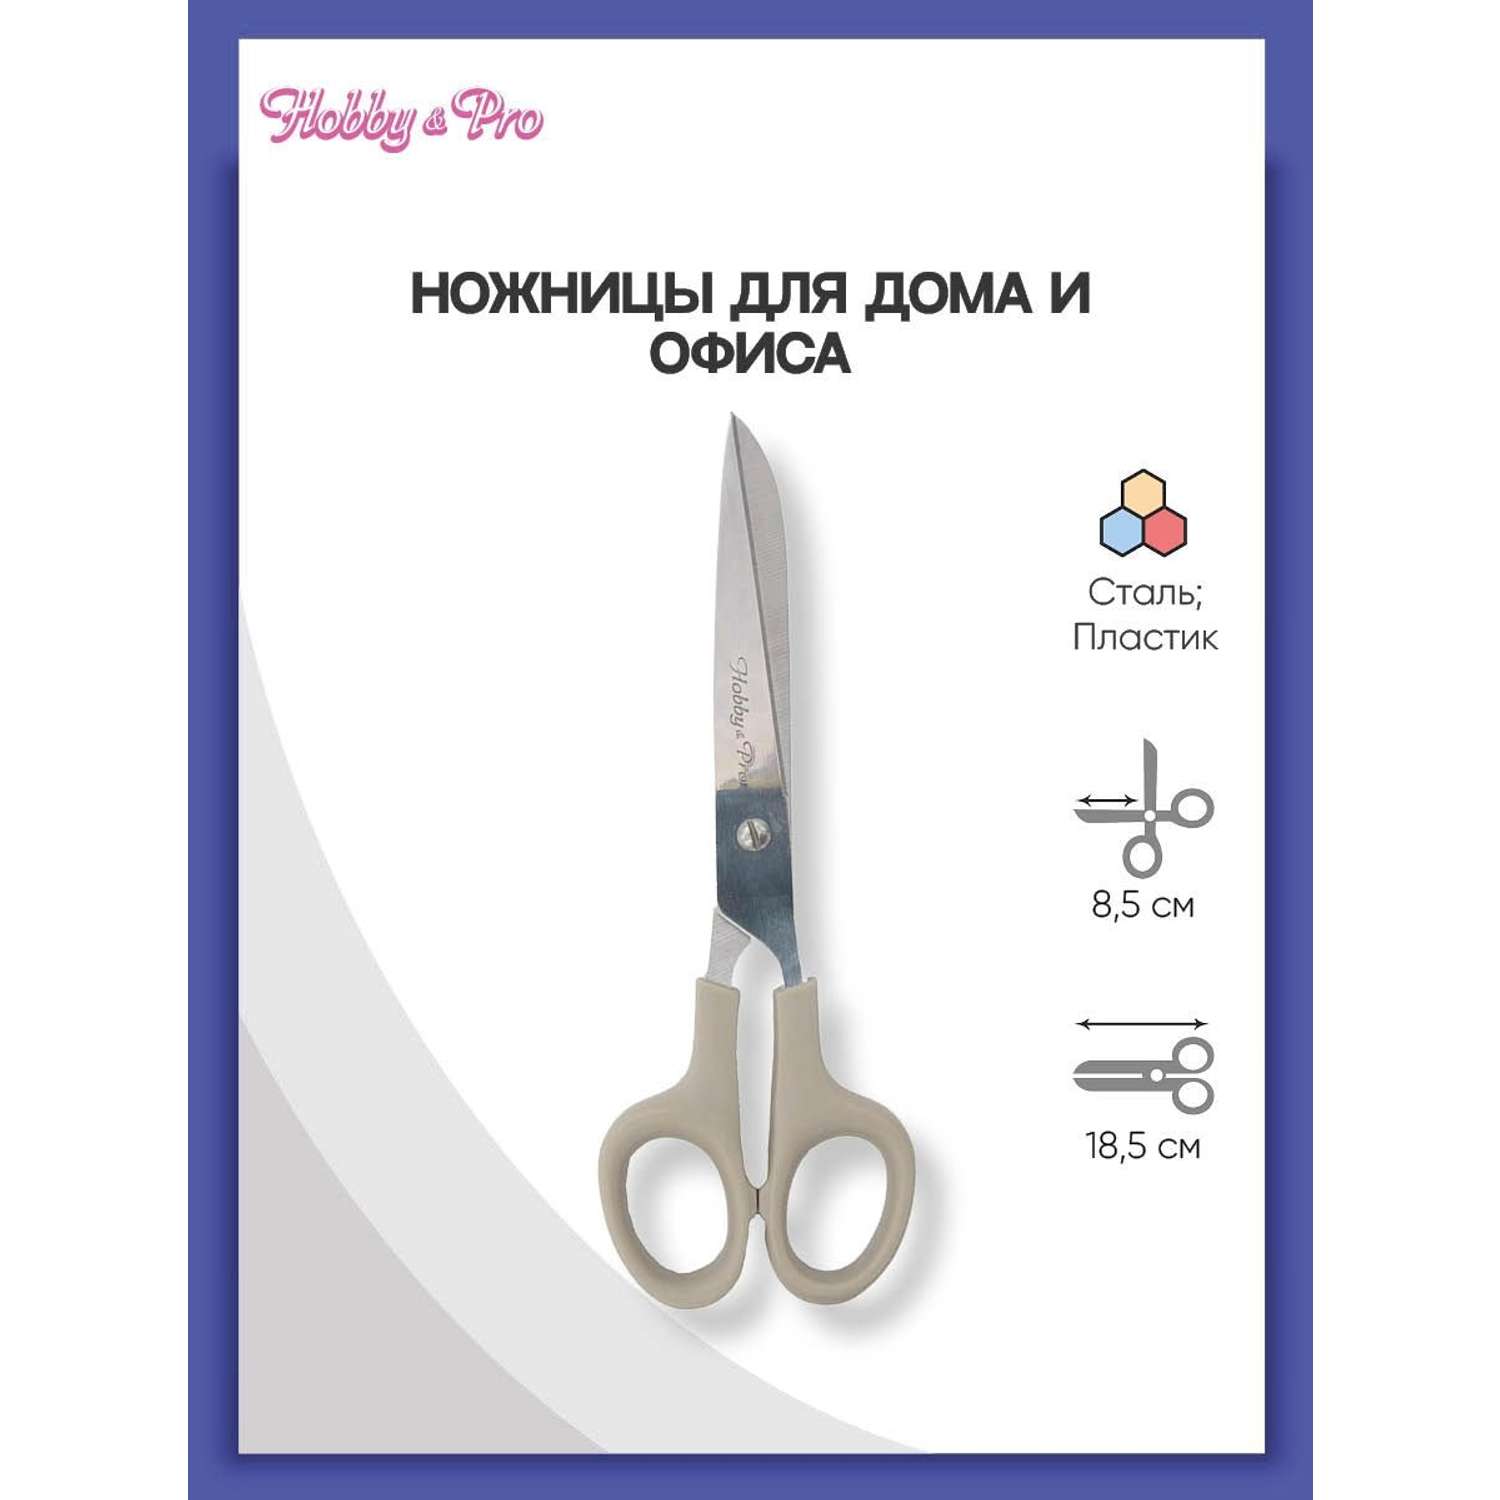 Ножницы для дома и офиса Hobby Pro 18.5 см - фото 1